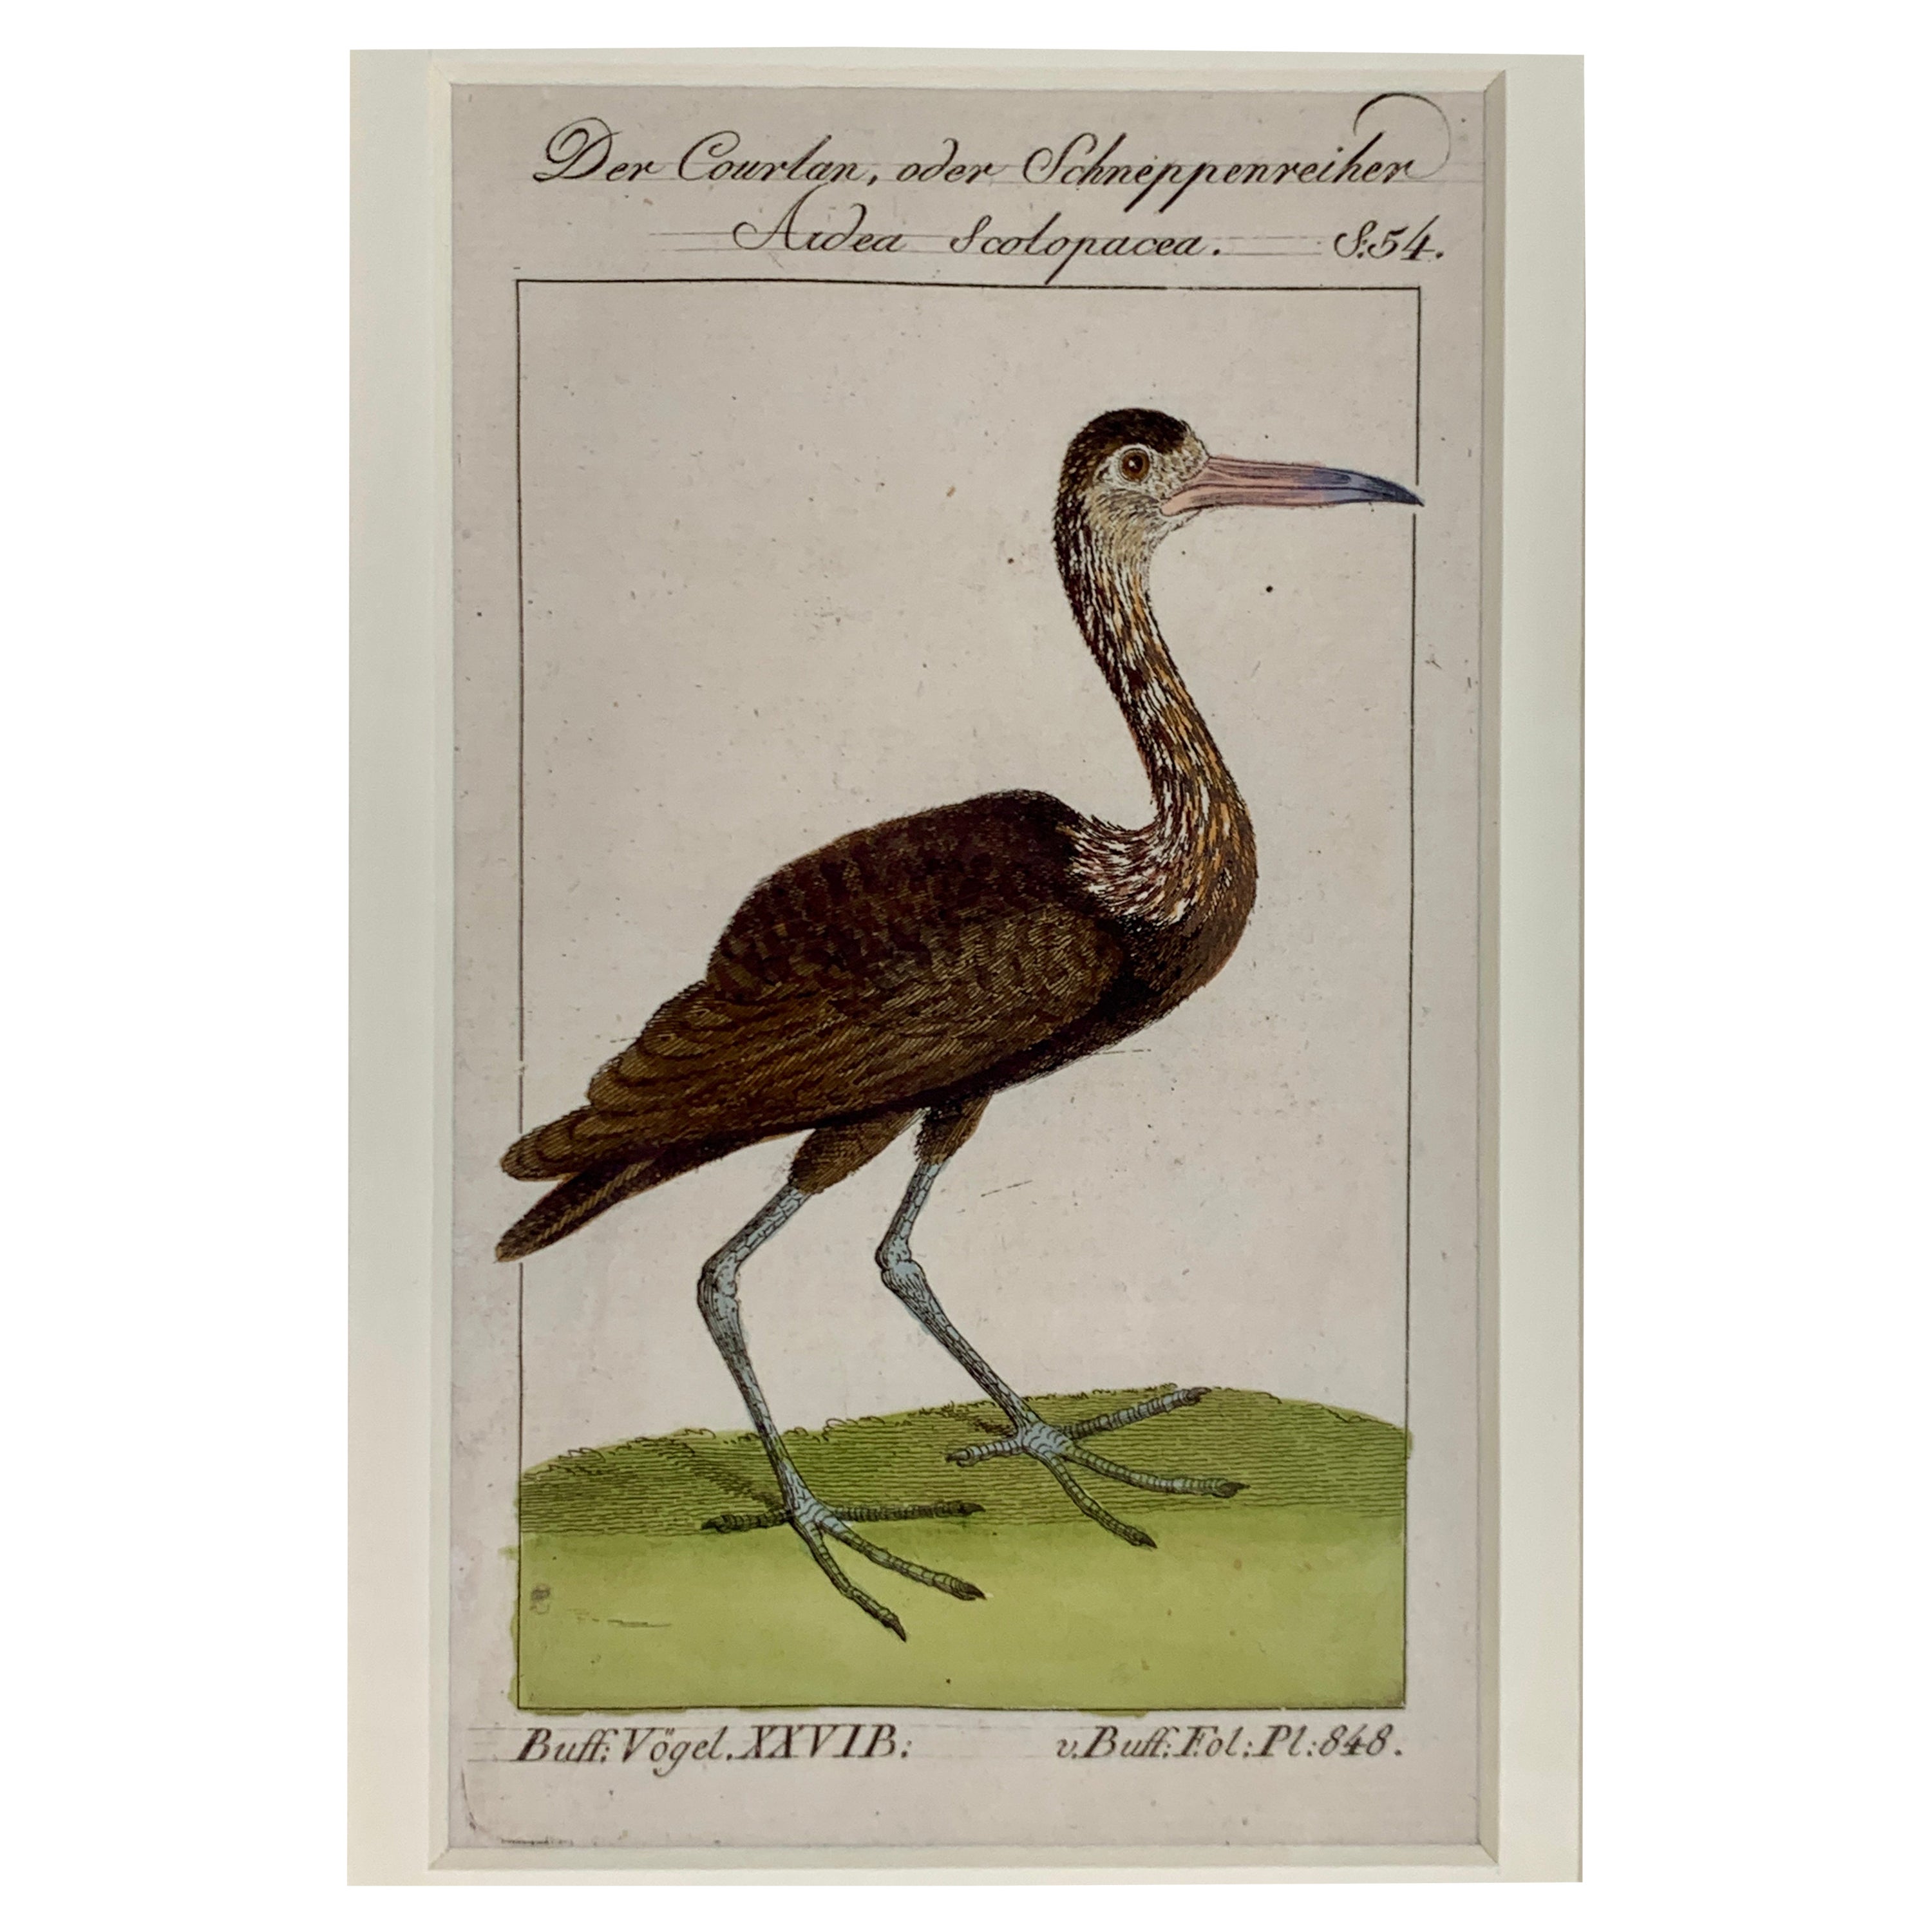 Gravures d'oiseaux colorées à la main - Ornements ornithologiques français Martinet-Buffon vers 1790